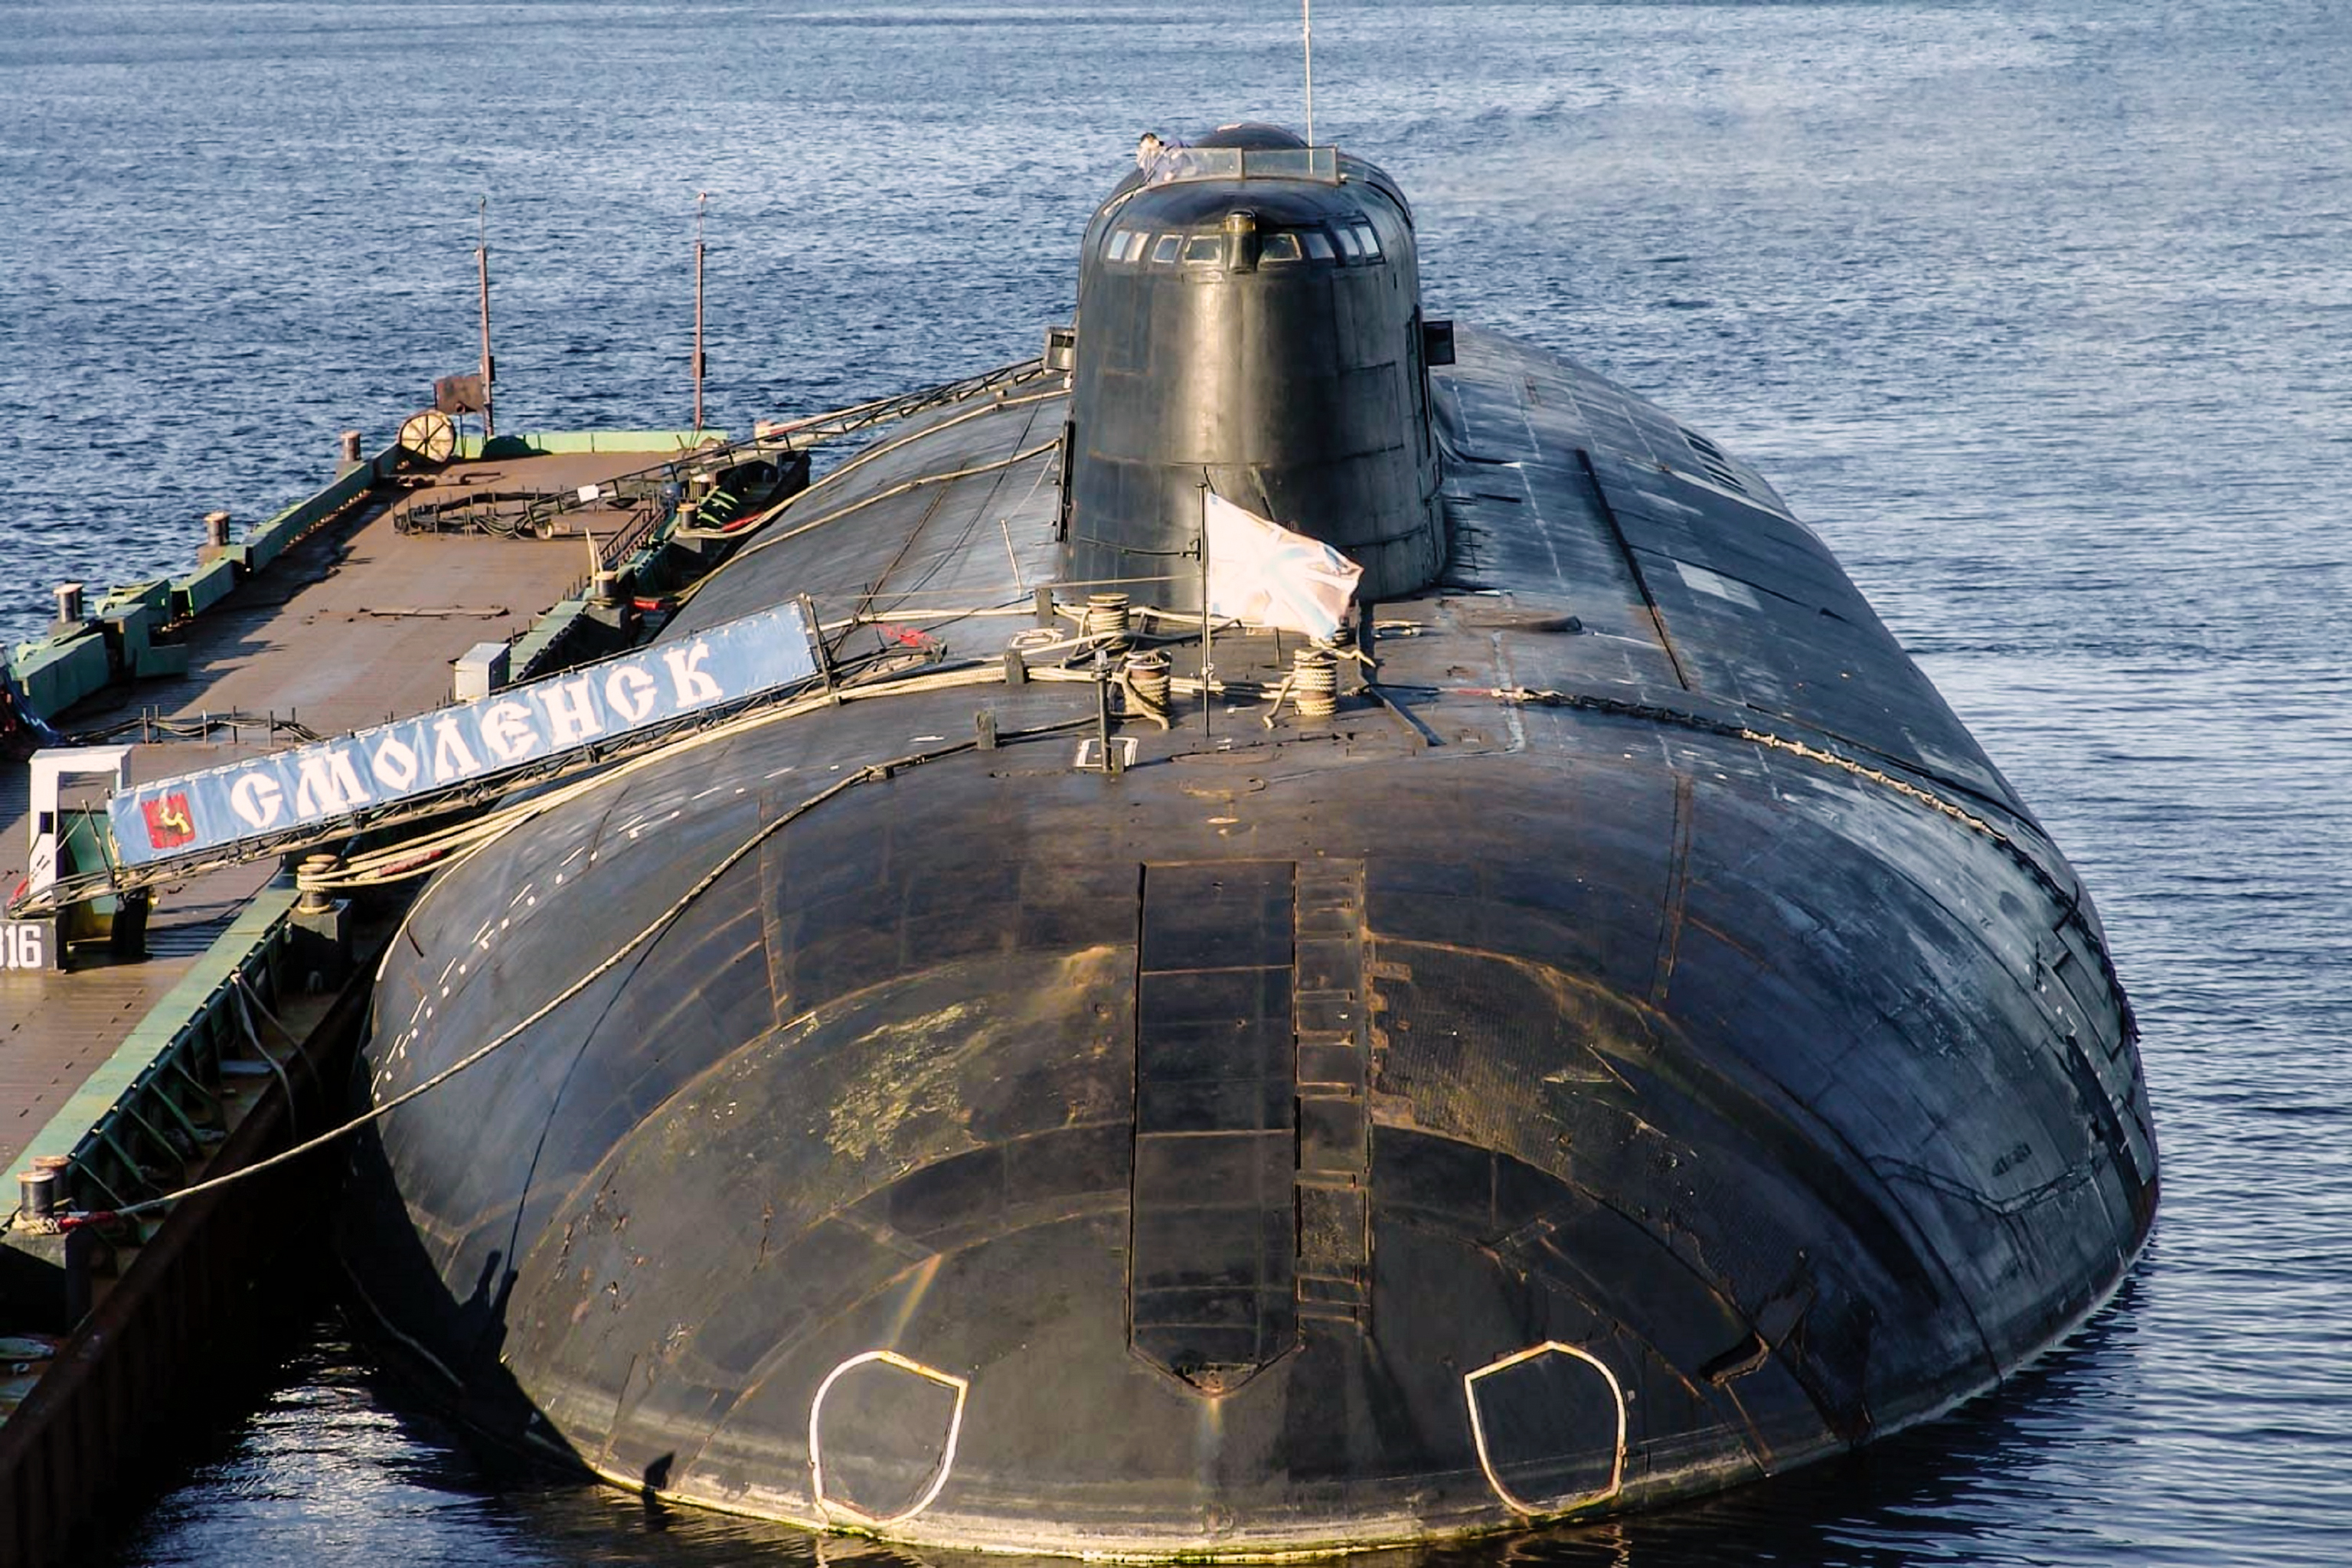 Апл подводные лодки. Лодки 949а Антей. Подводная лодка 949а Антей. Подводные лодки проекта 949а «Антей» Курск. К-410 Смоленск проекта 949а Антей.